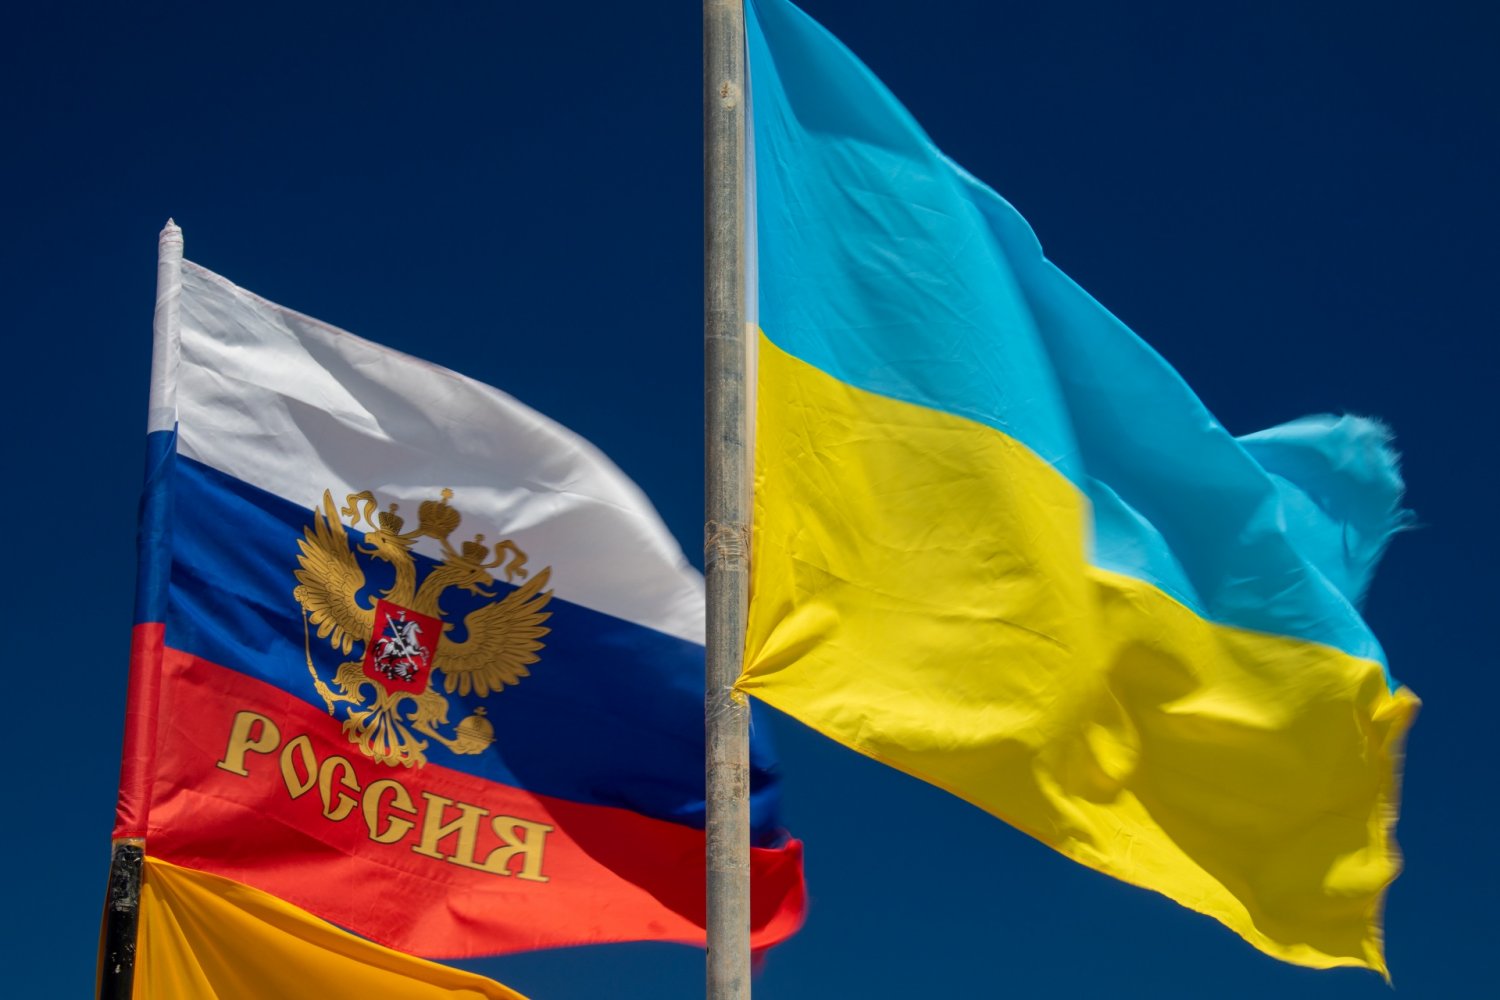 После переговоров между Россией и США по поводу напряженности в Украине прогресса не видно